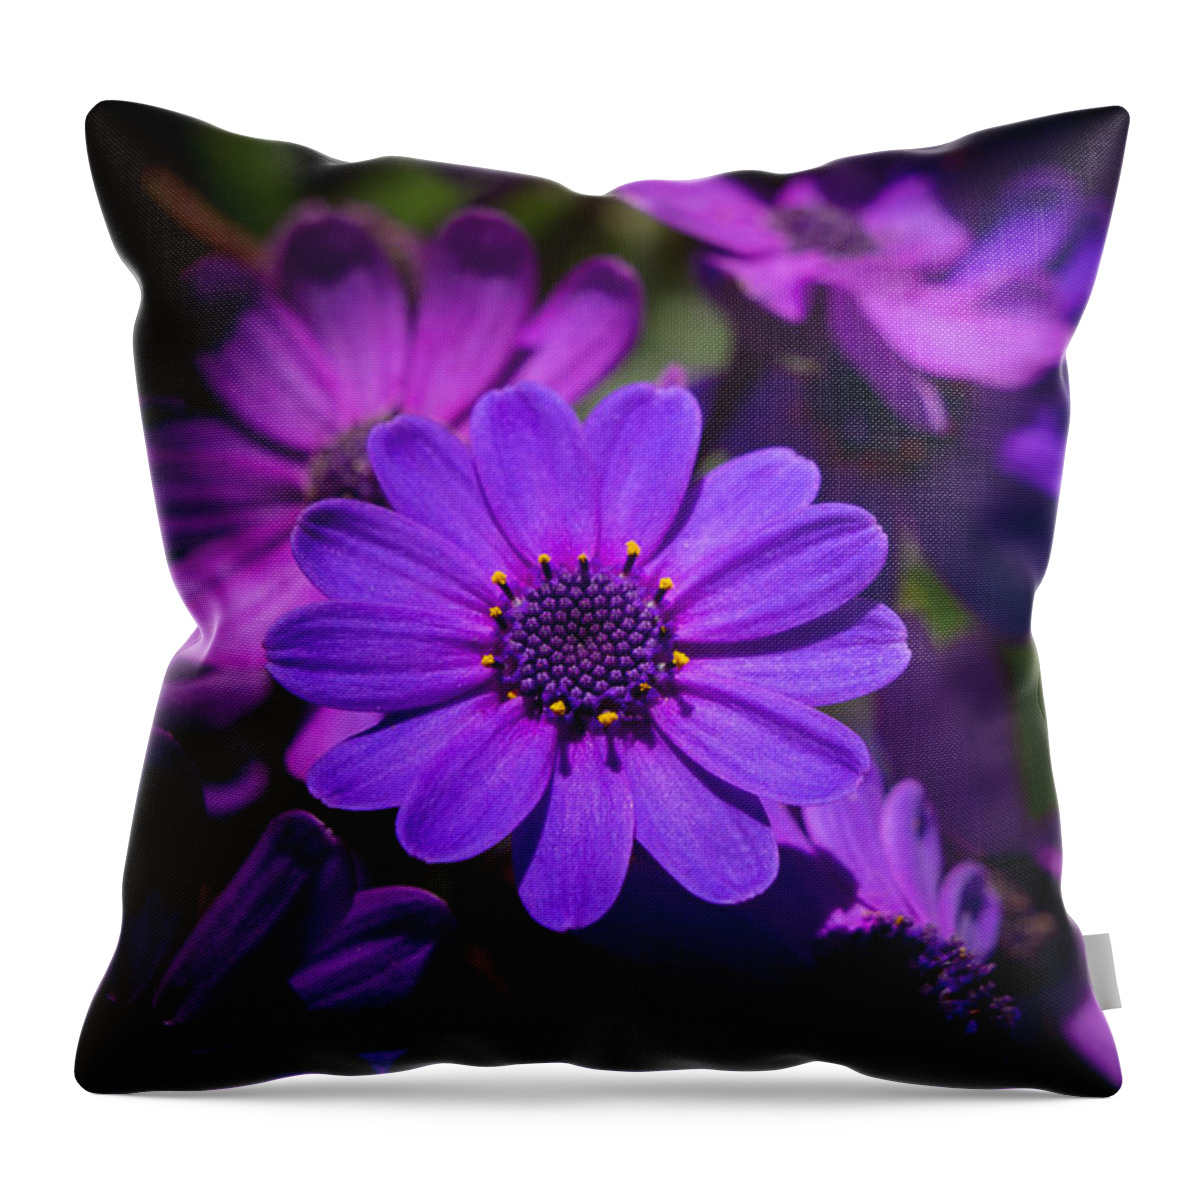 Flower Throw Pillow featuring the photograph Garden Light by Derek Dean